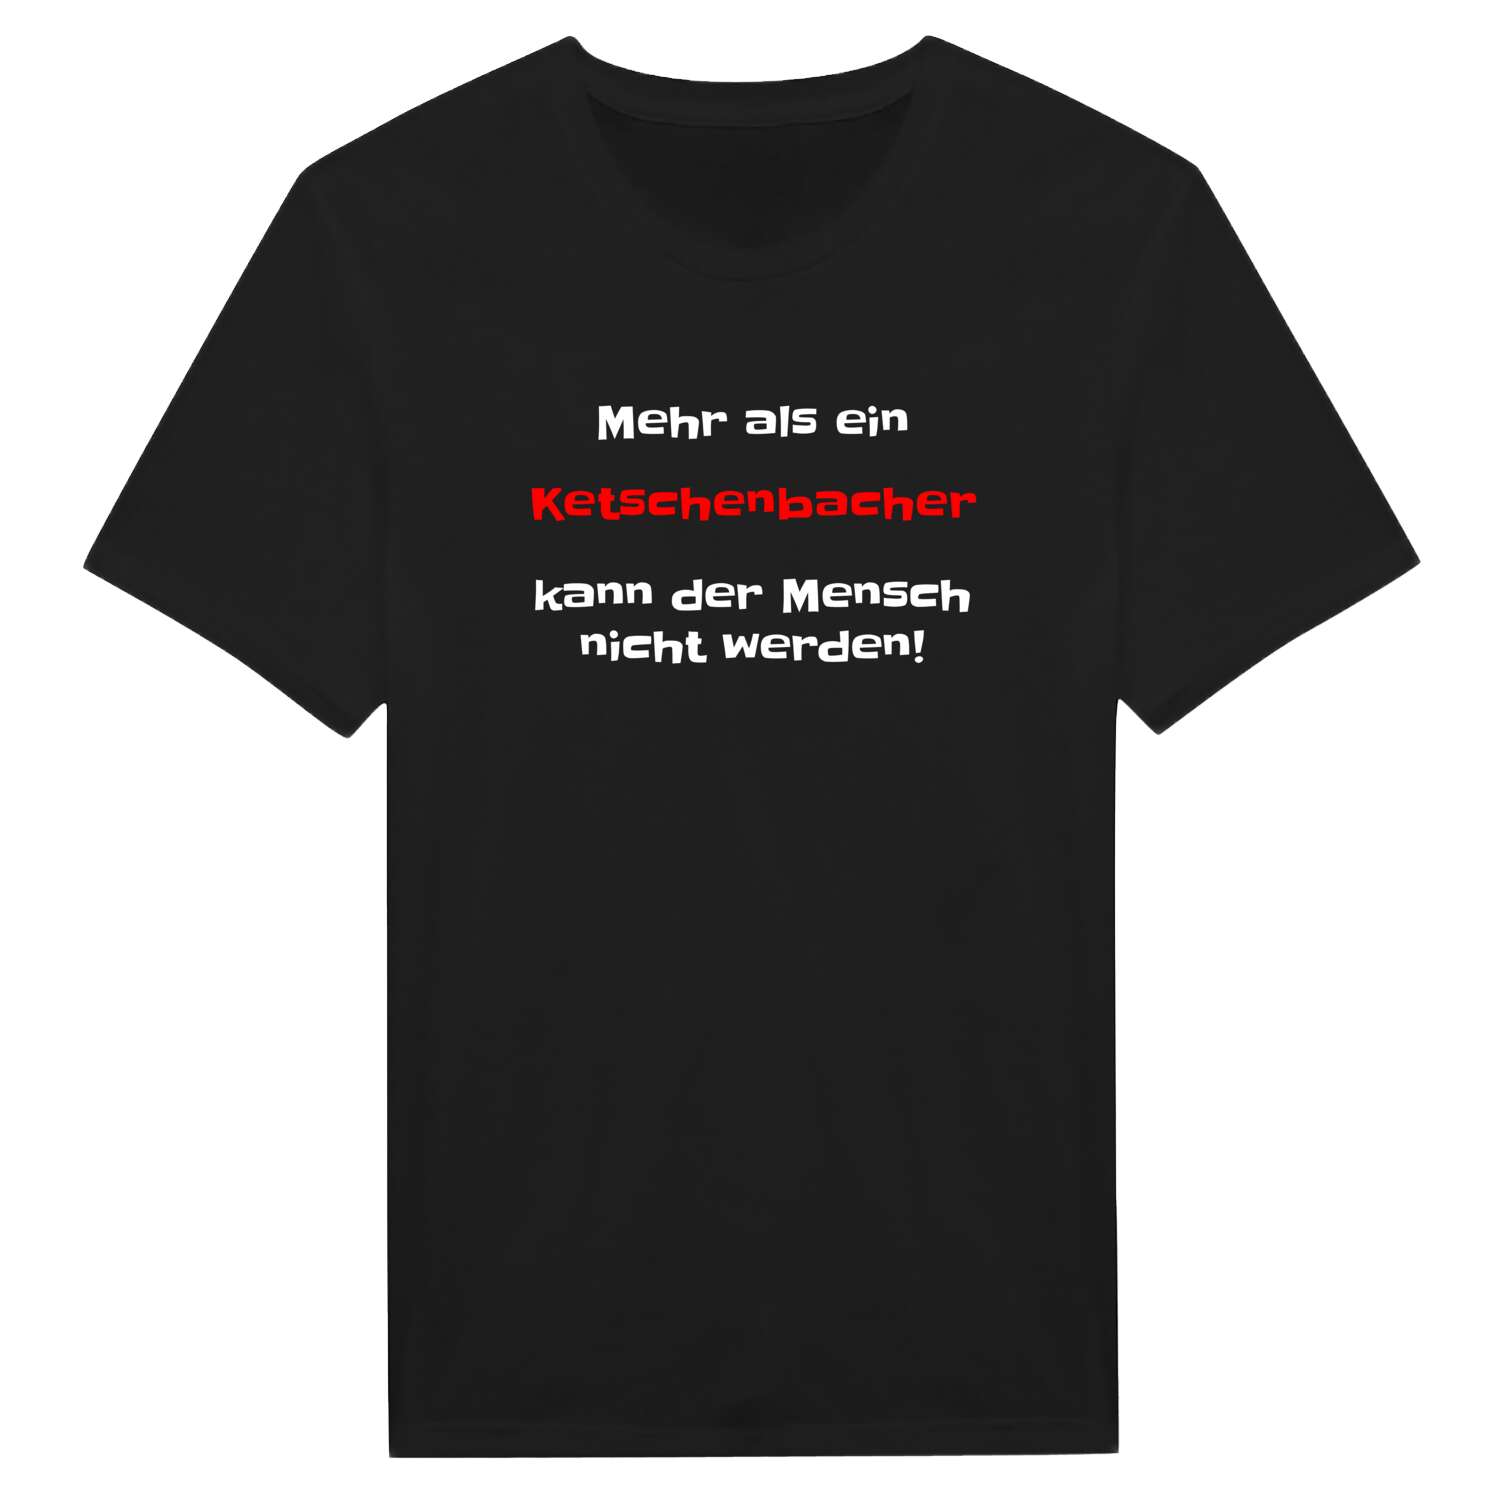 Ketschenbach T-Shirt »Mehr als ein«